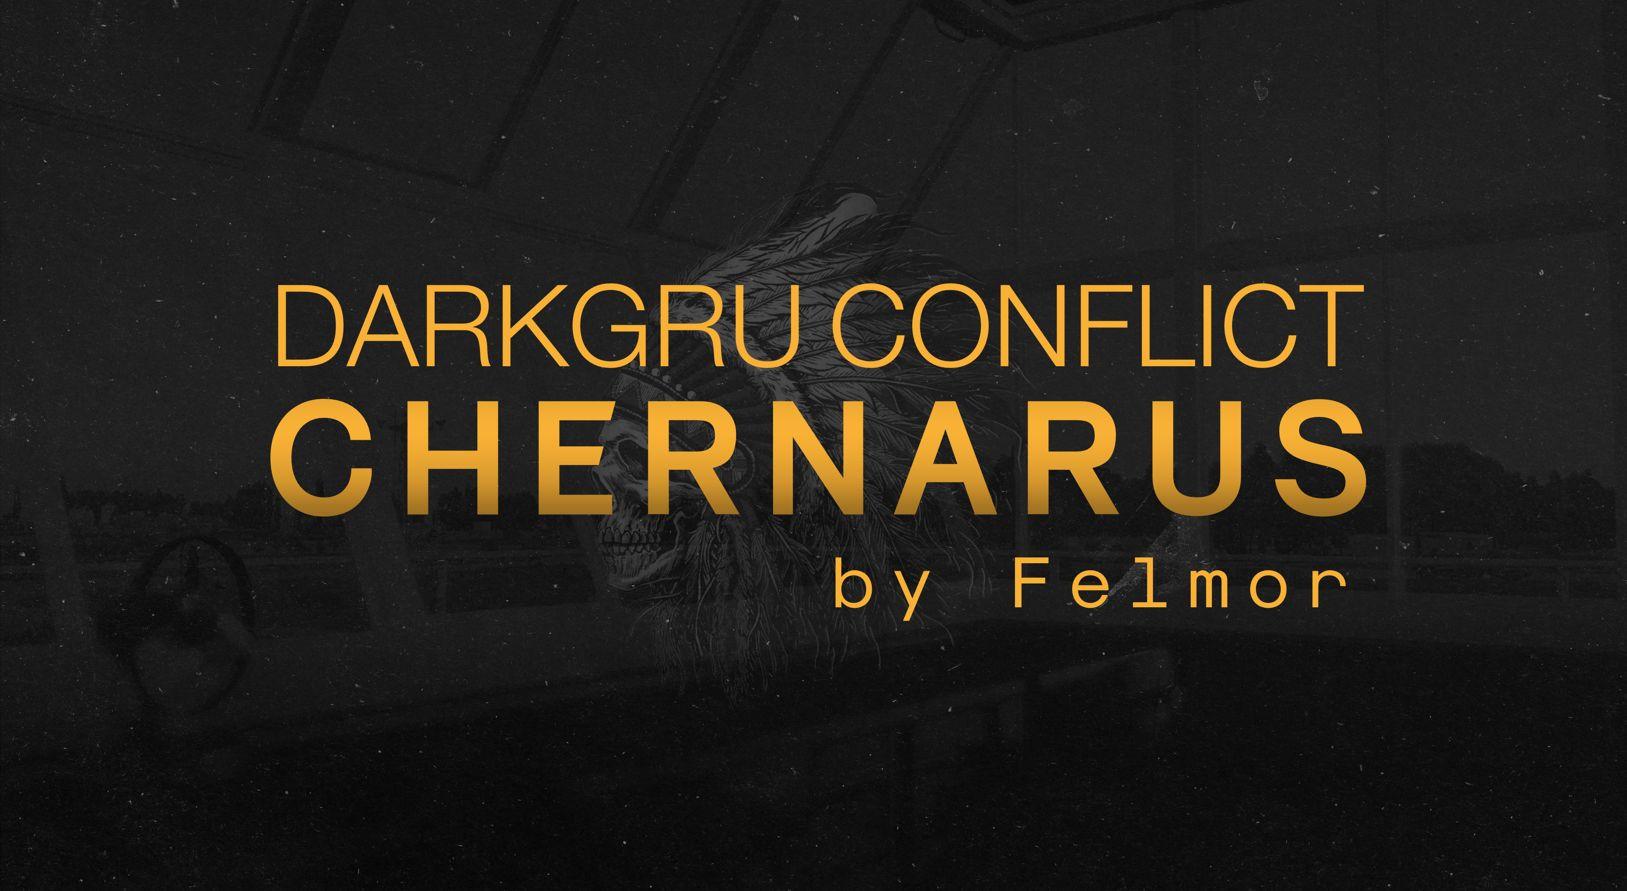 Darkgru Chernarus Conflict